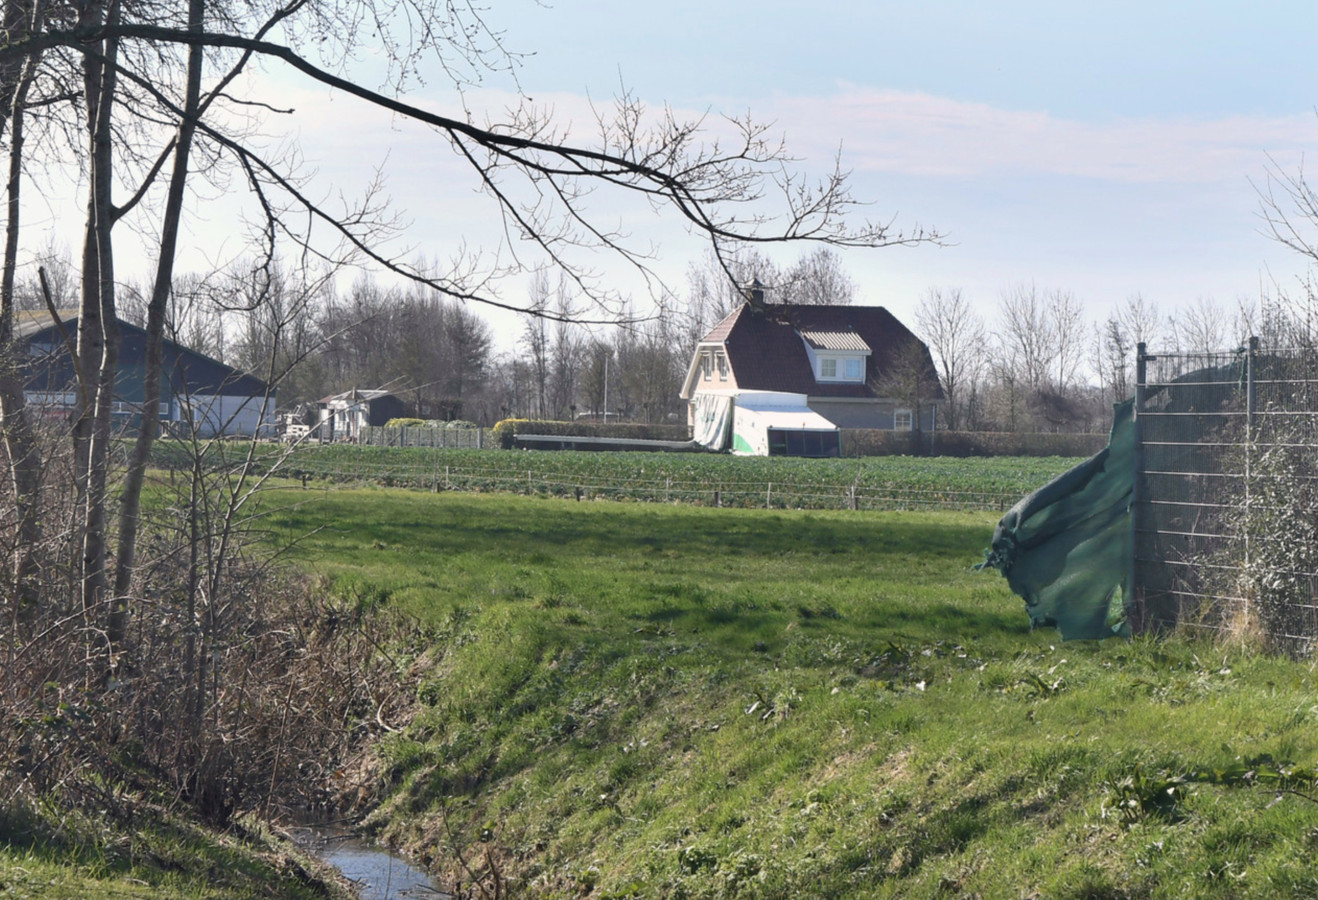 Bouwgrond naast het korfbalveld voor fase 1 van de uitbreiding van Sint Laurens.